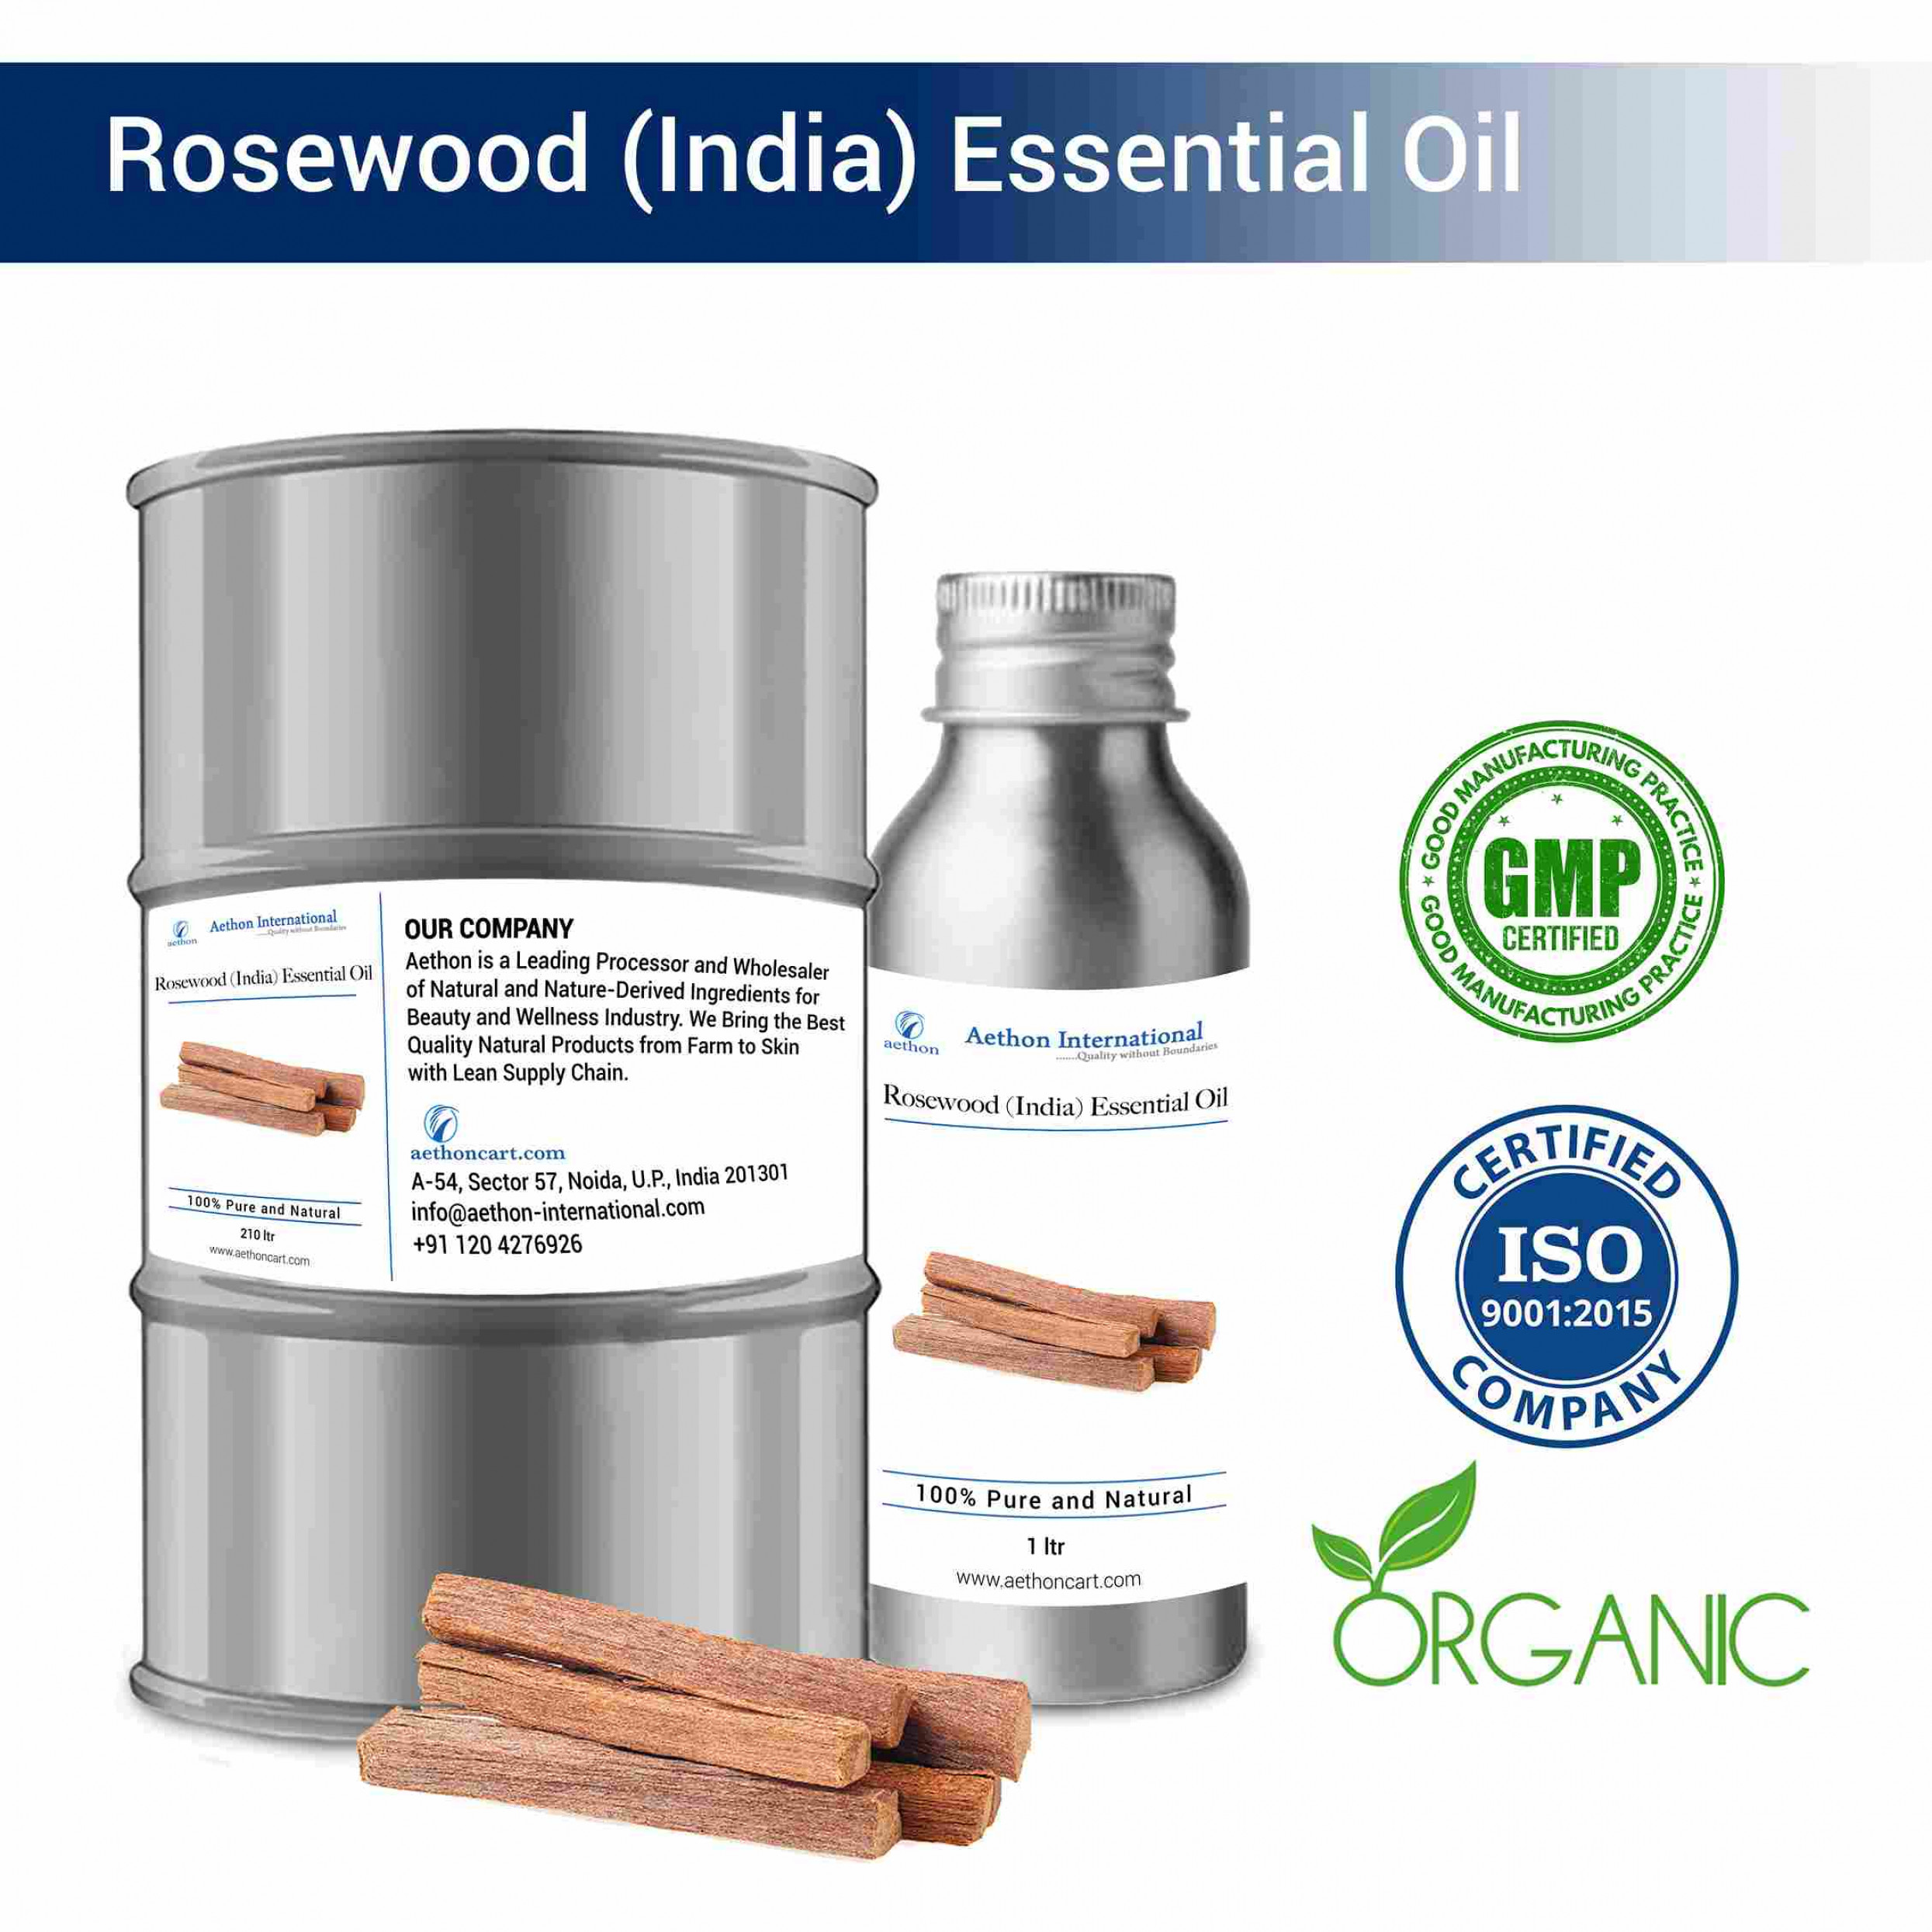 Rosewood (India) Essential Oil